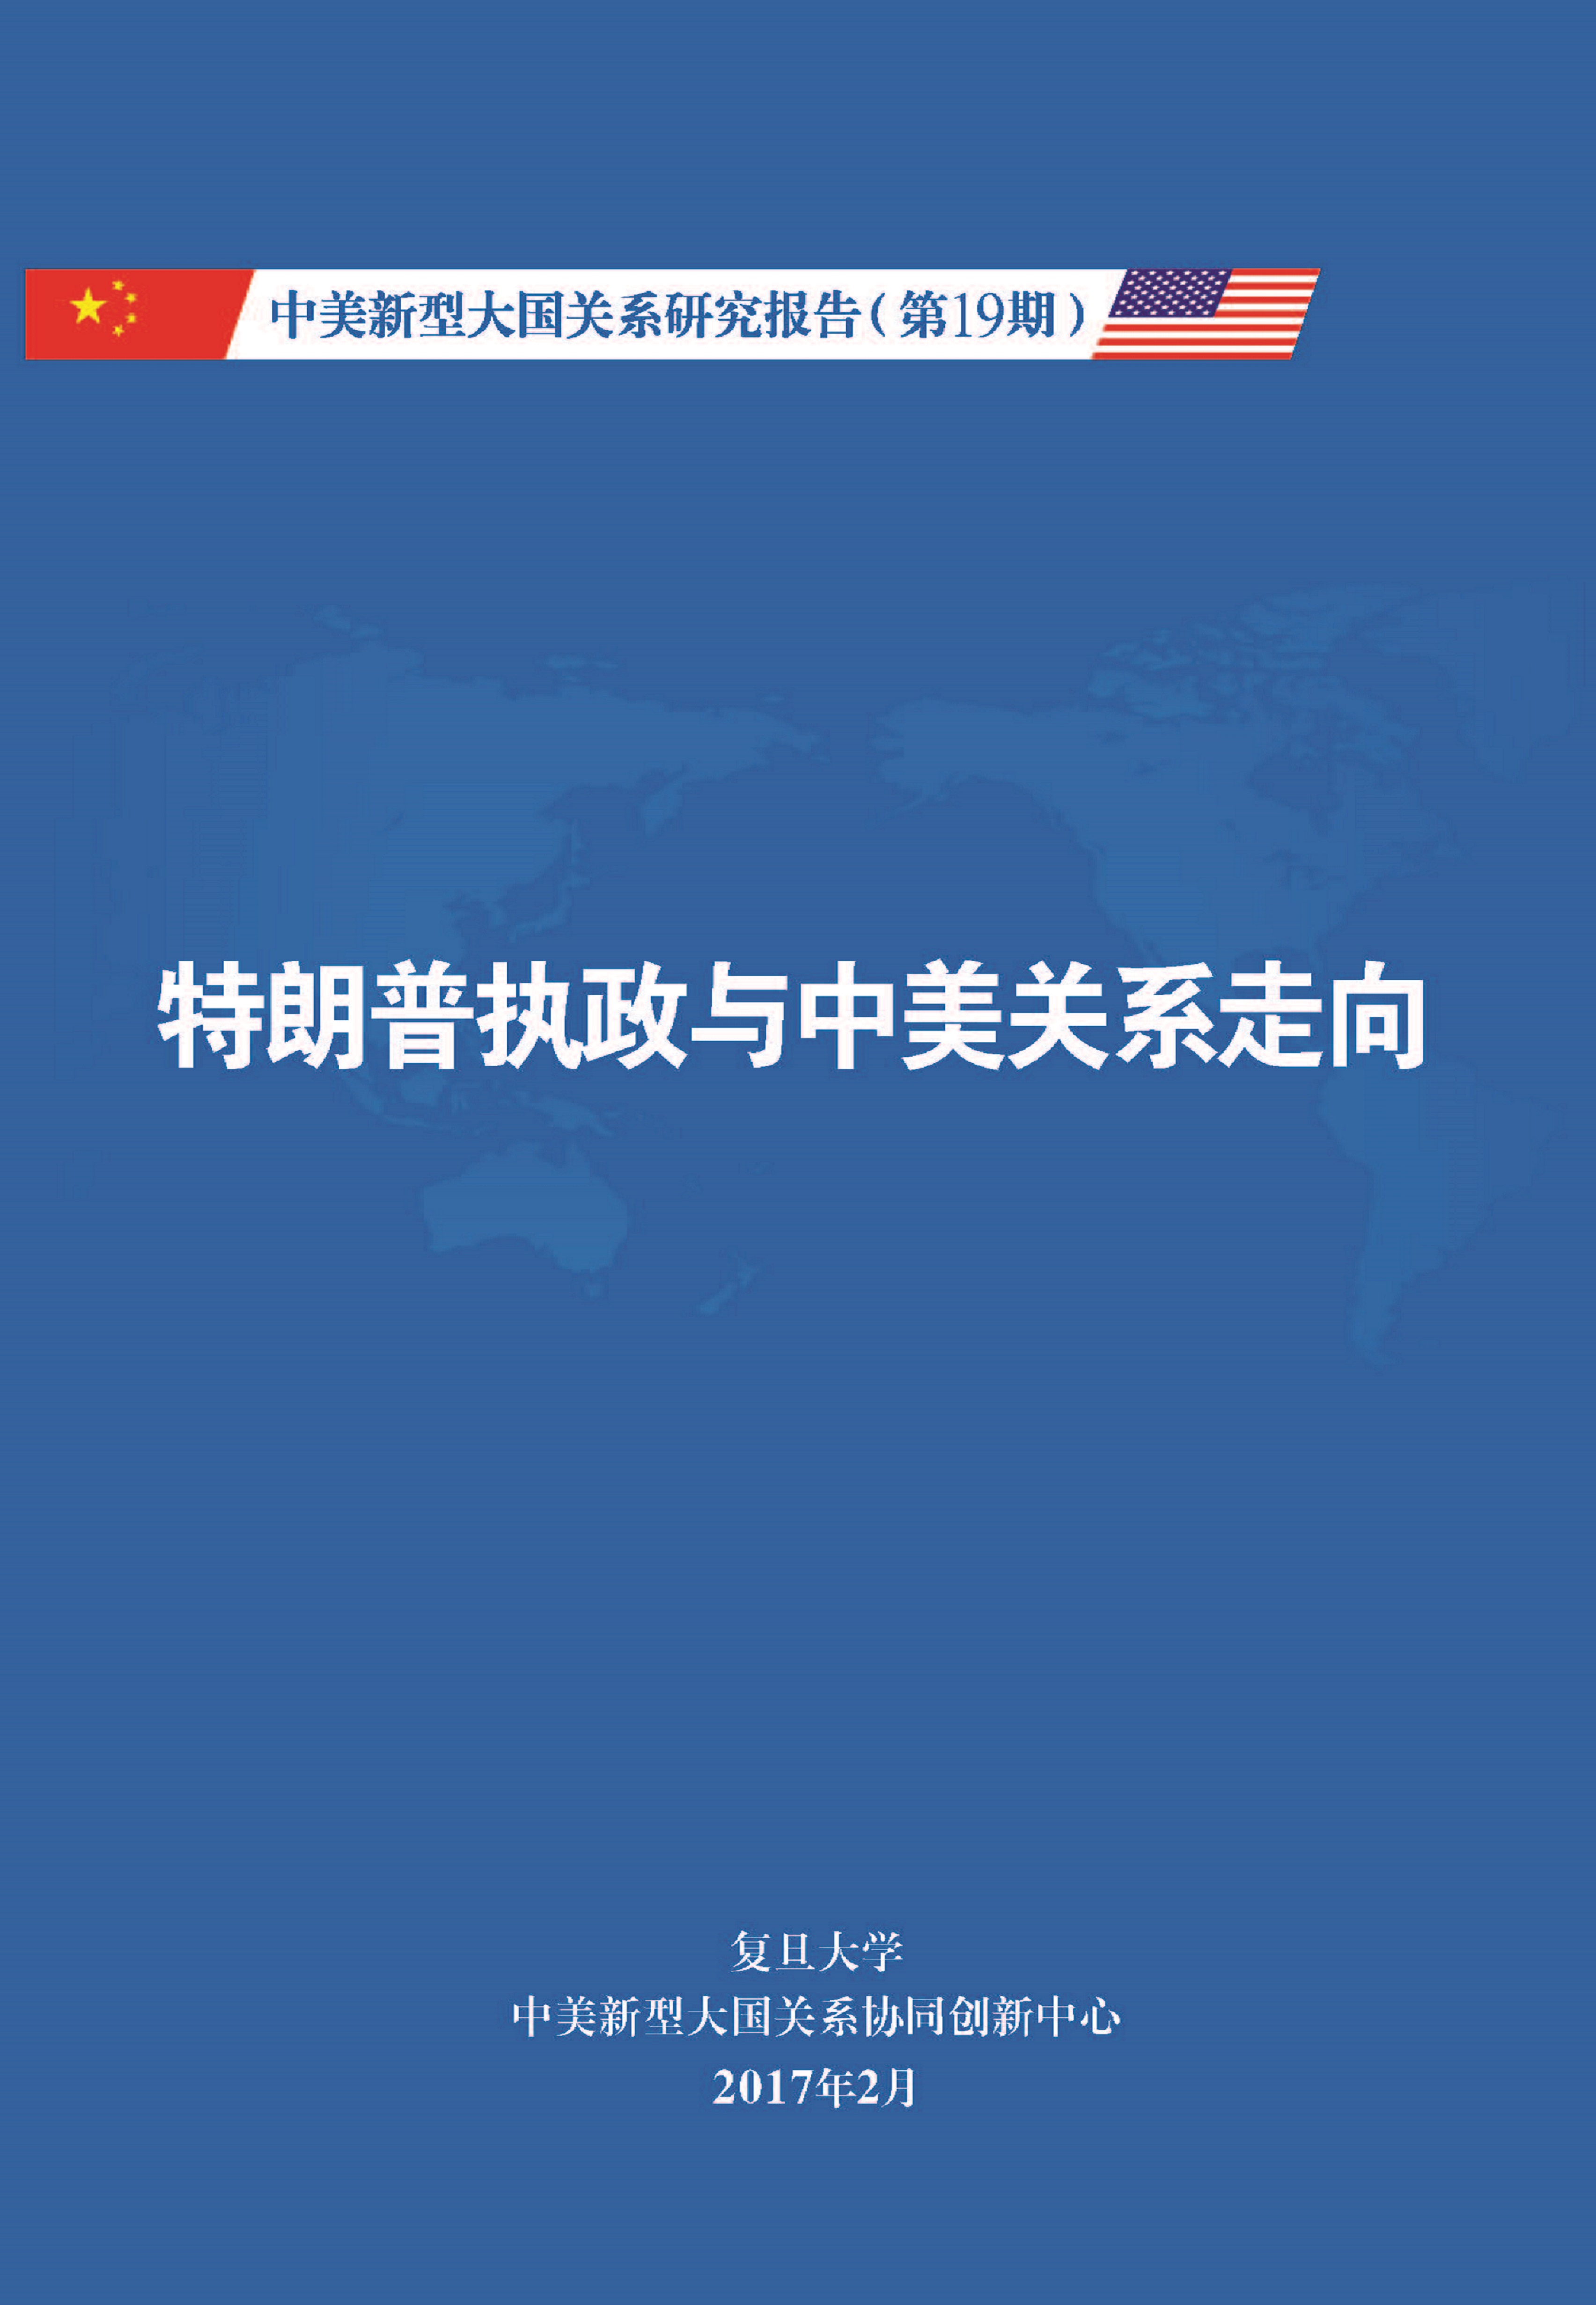 《中美新型大国关系研究报告》第19期